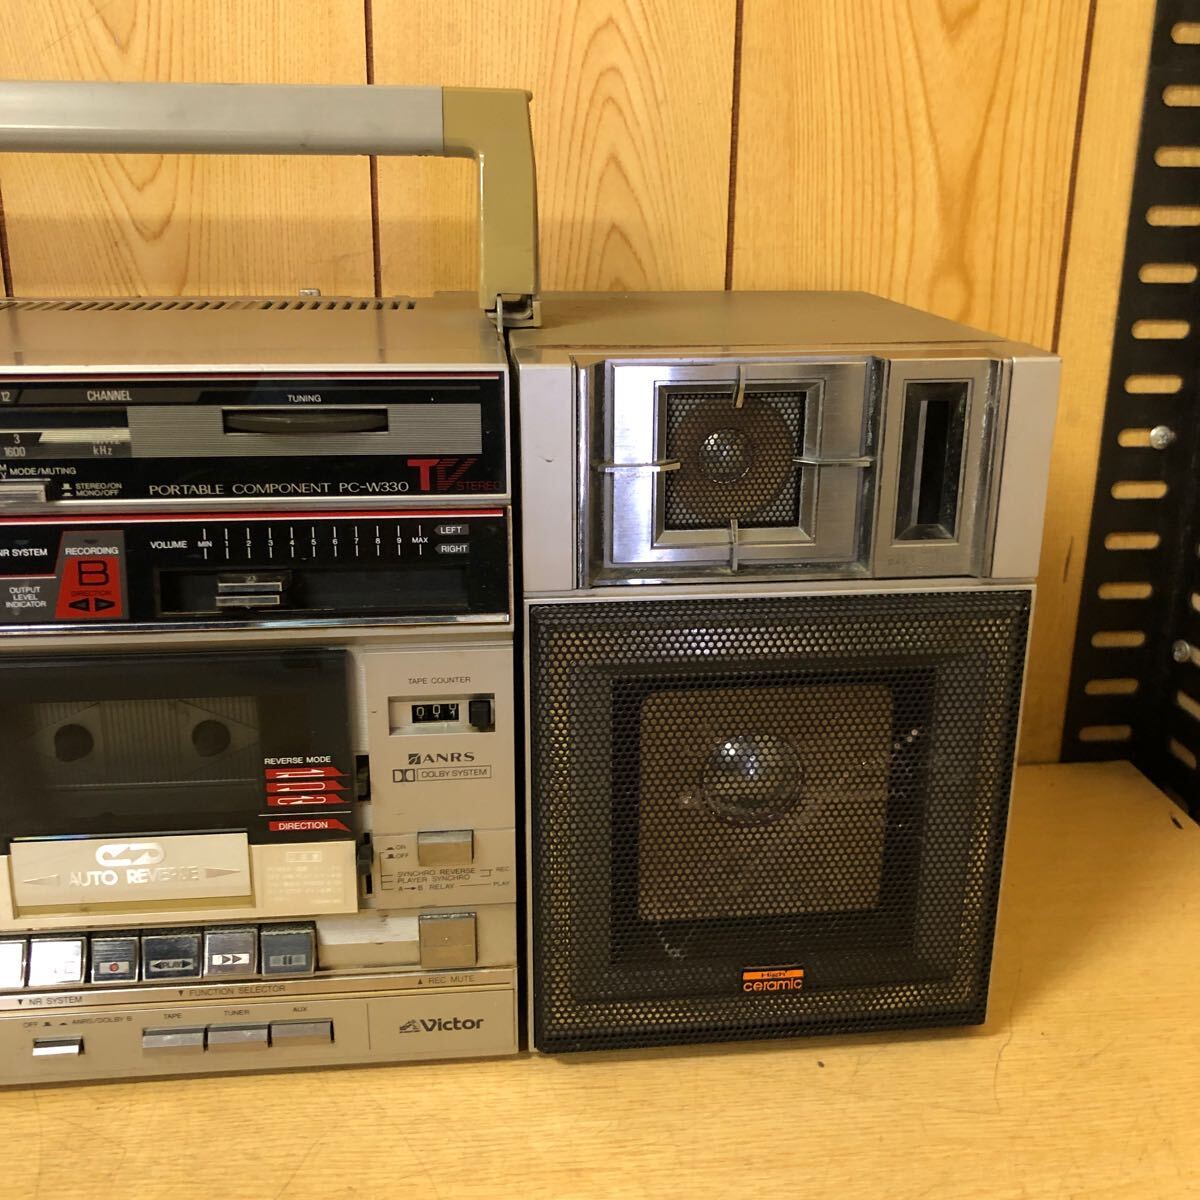 Victor Victor PC-W330 PC-B330 radio-cassette AM FM Showa Retro rare radio cassette present condition goods 